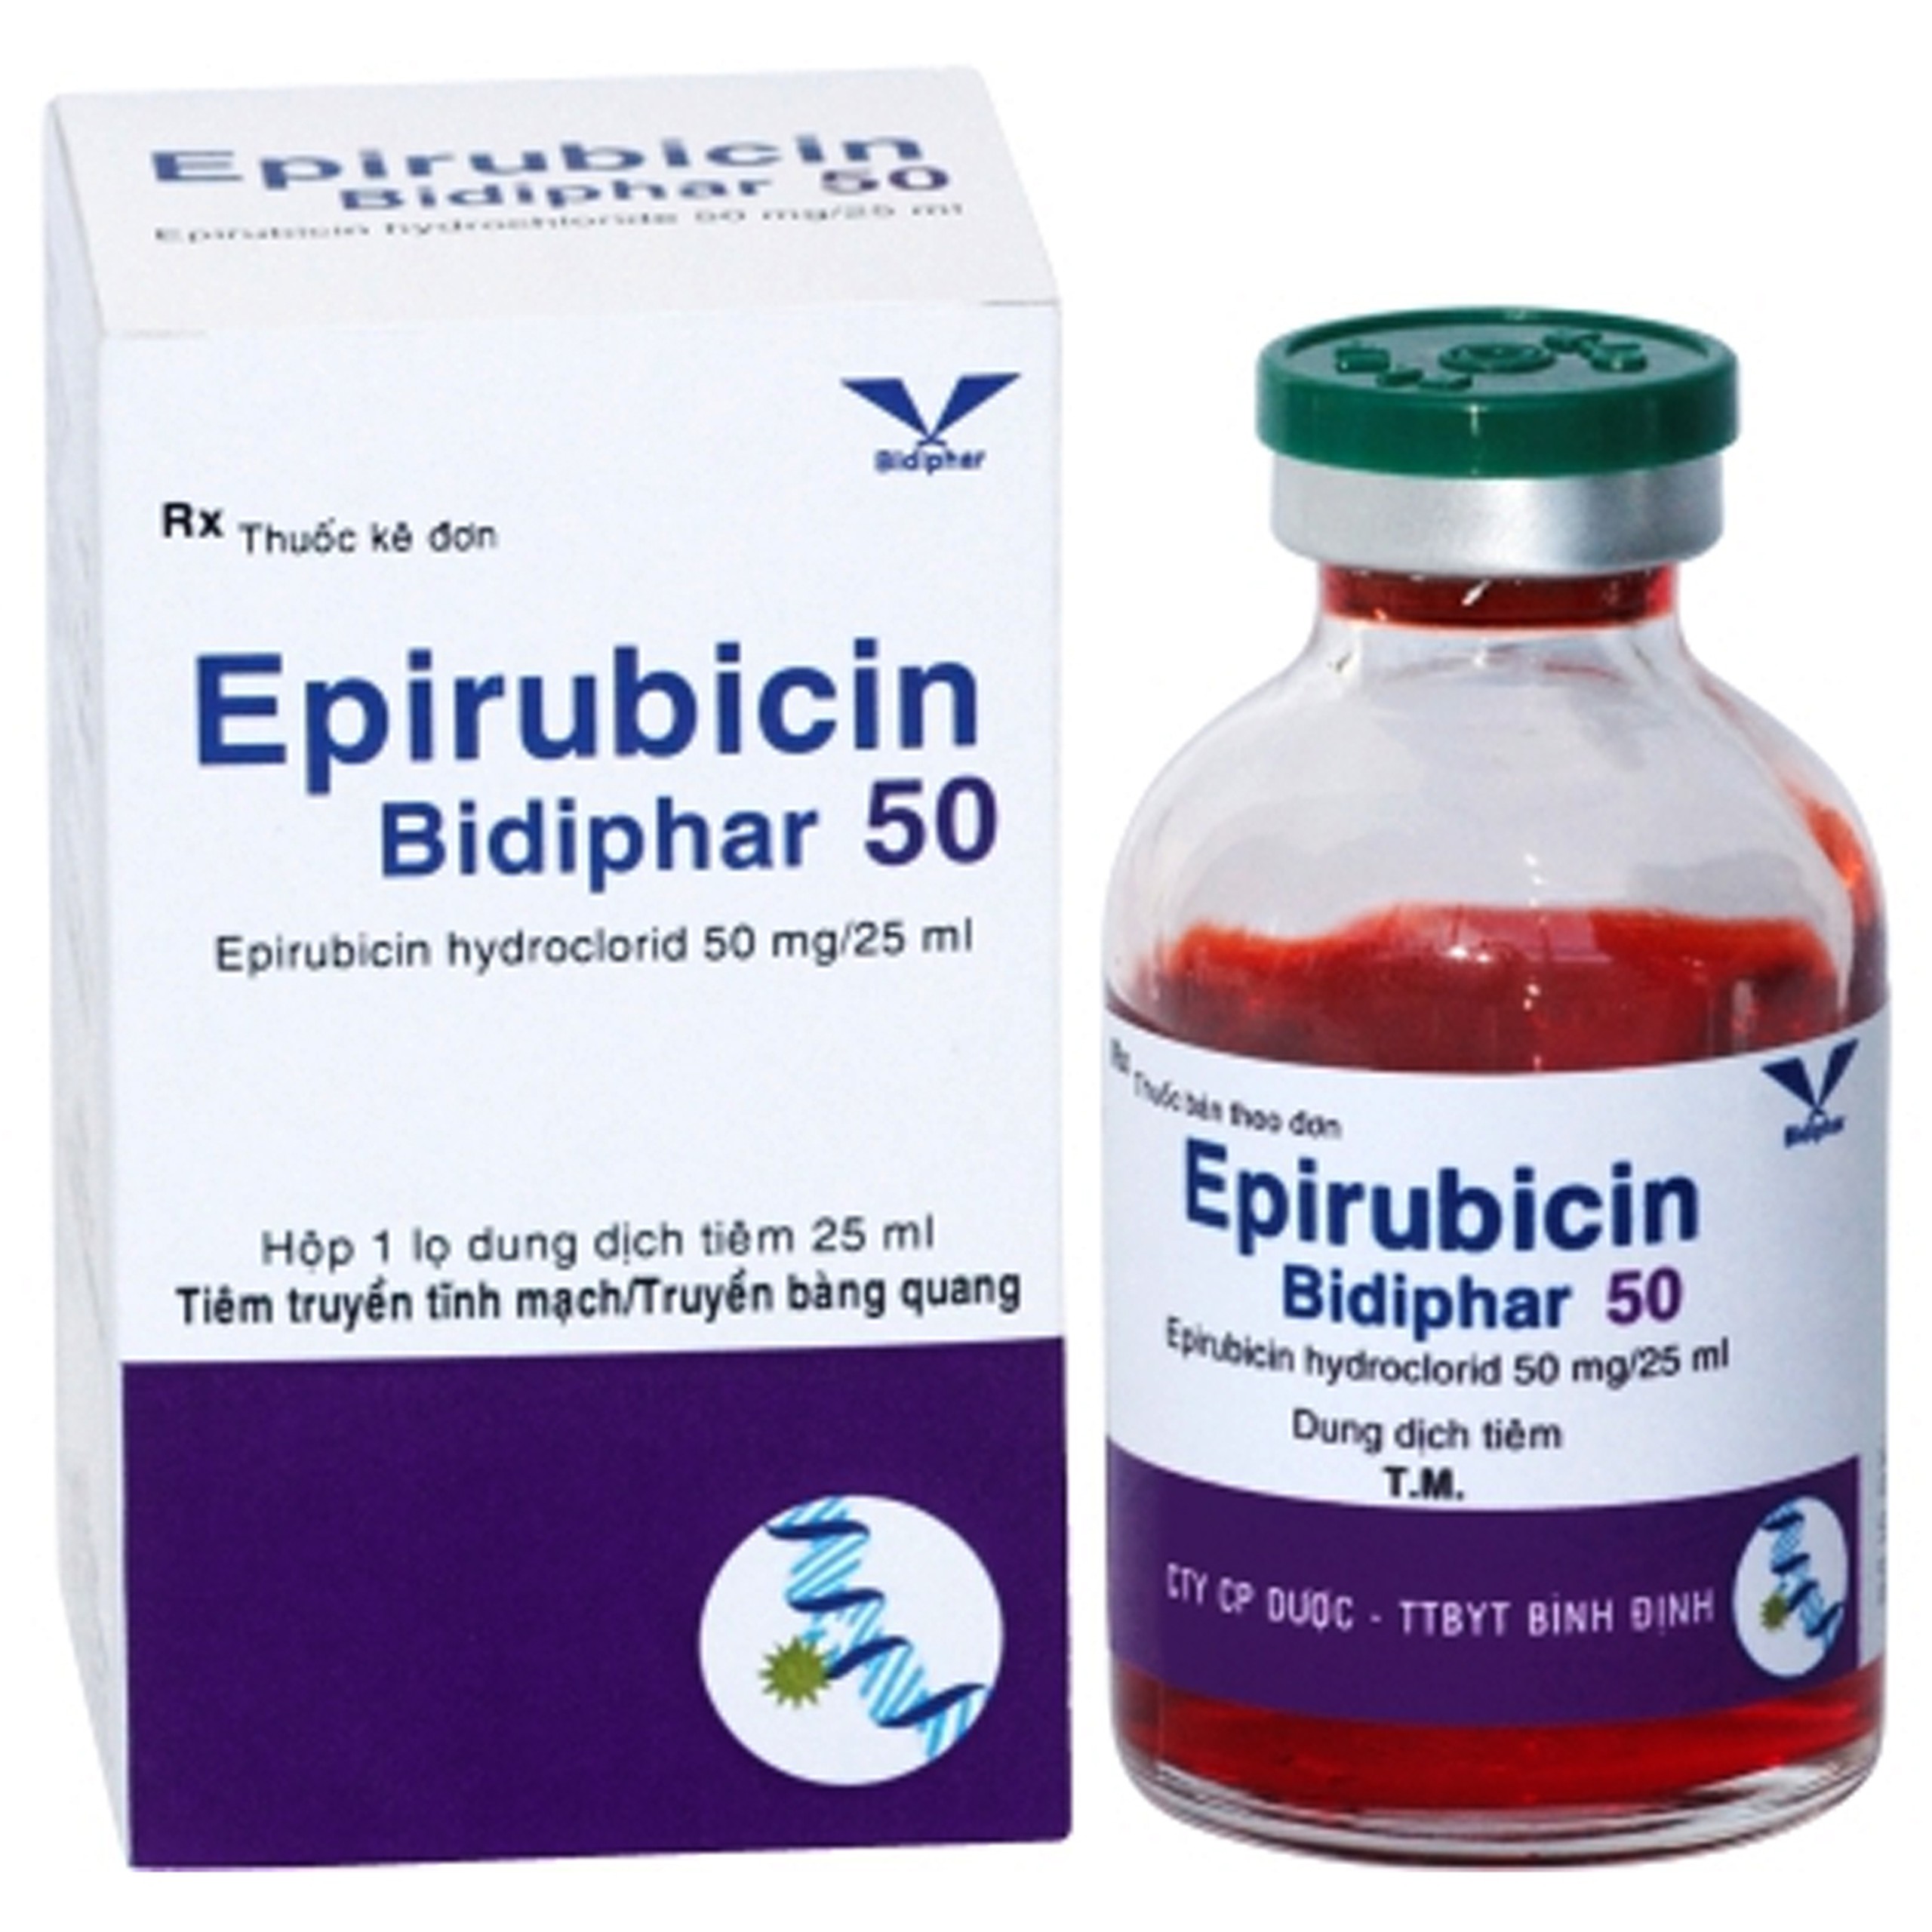 Dung dịch tiêm Epirubicin F50 Bidiphar hỗ trợ điều trị ung thư vú và ung thư bề mặt bàng quang (25ml)